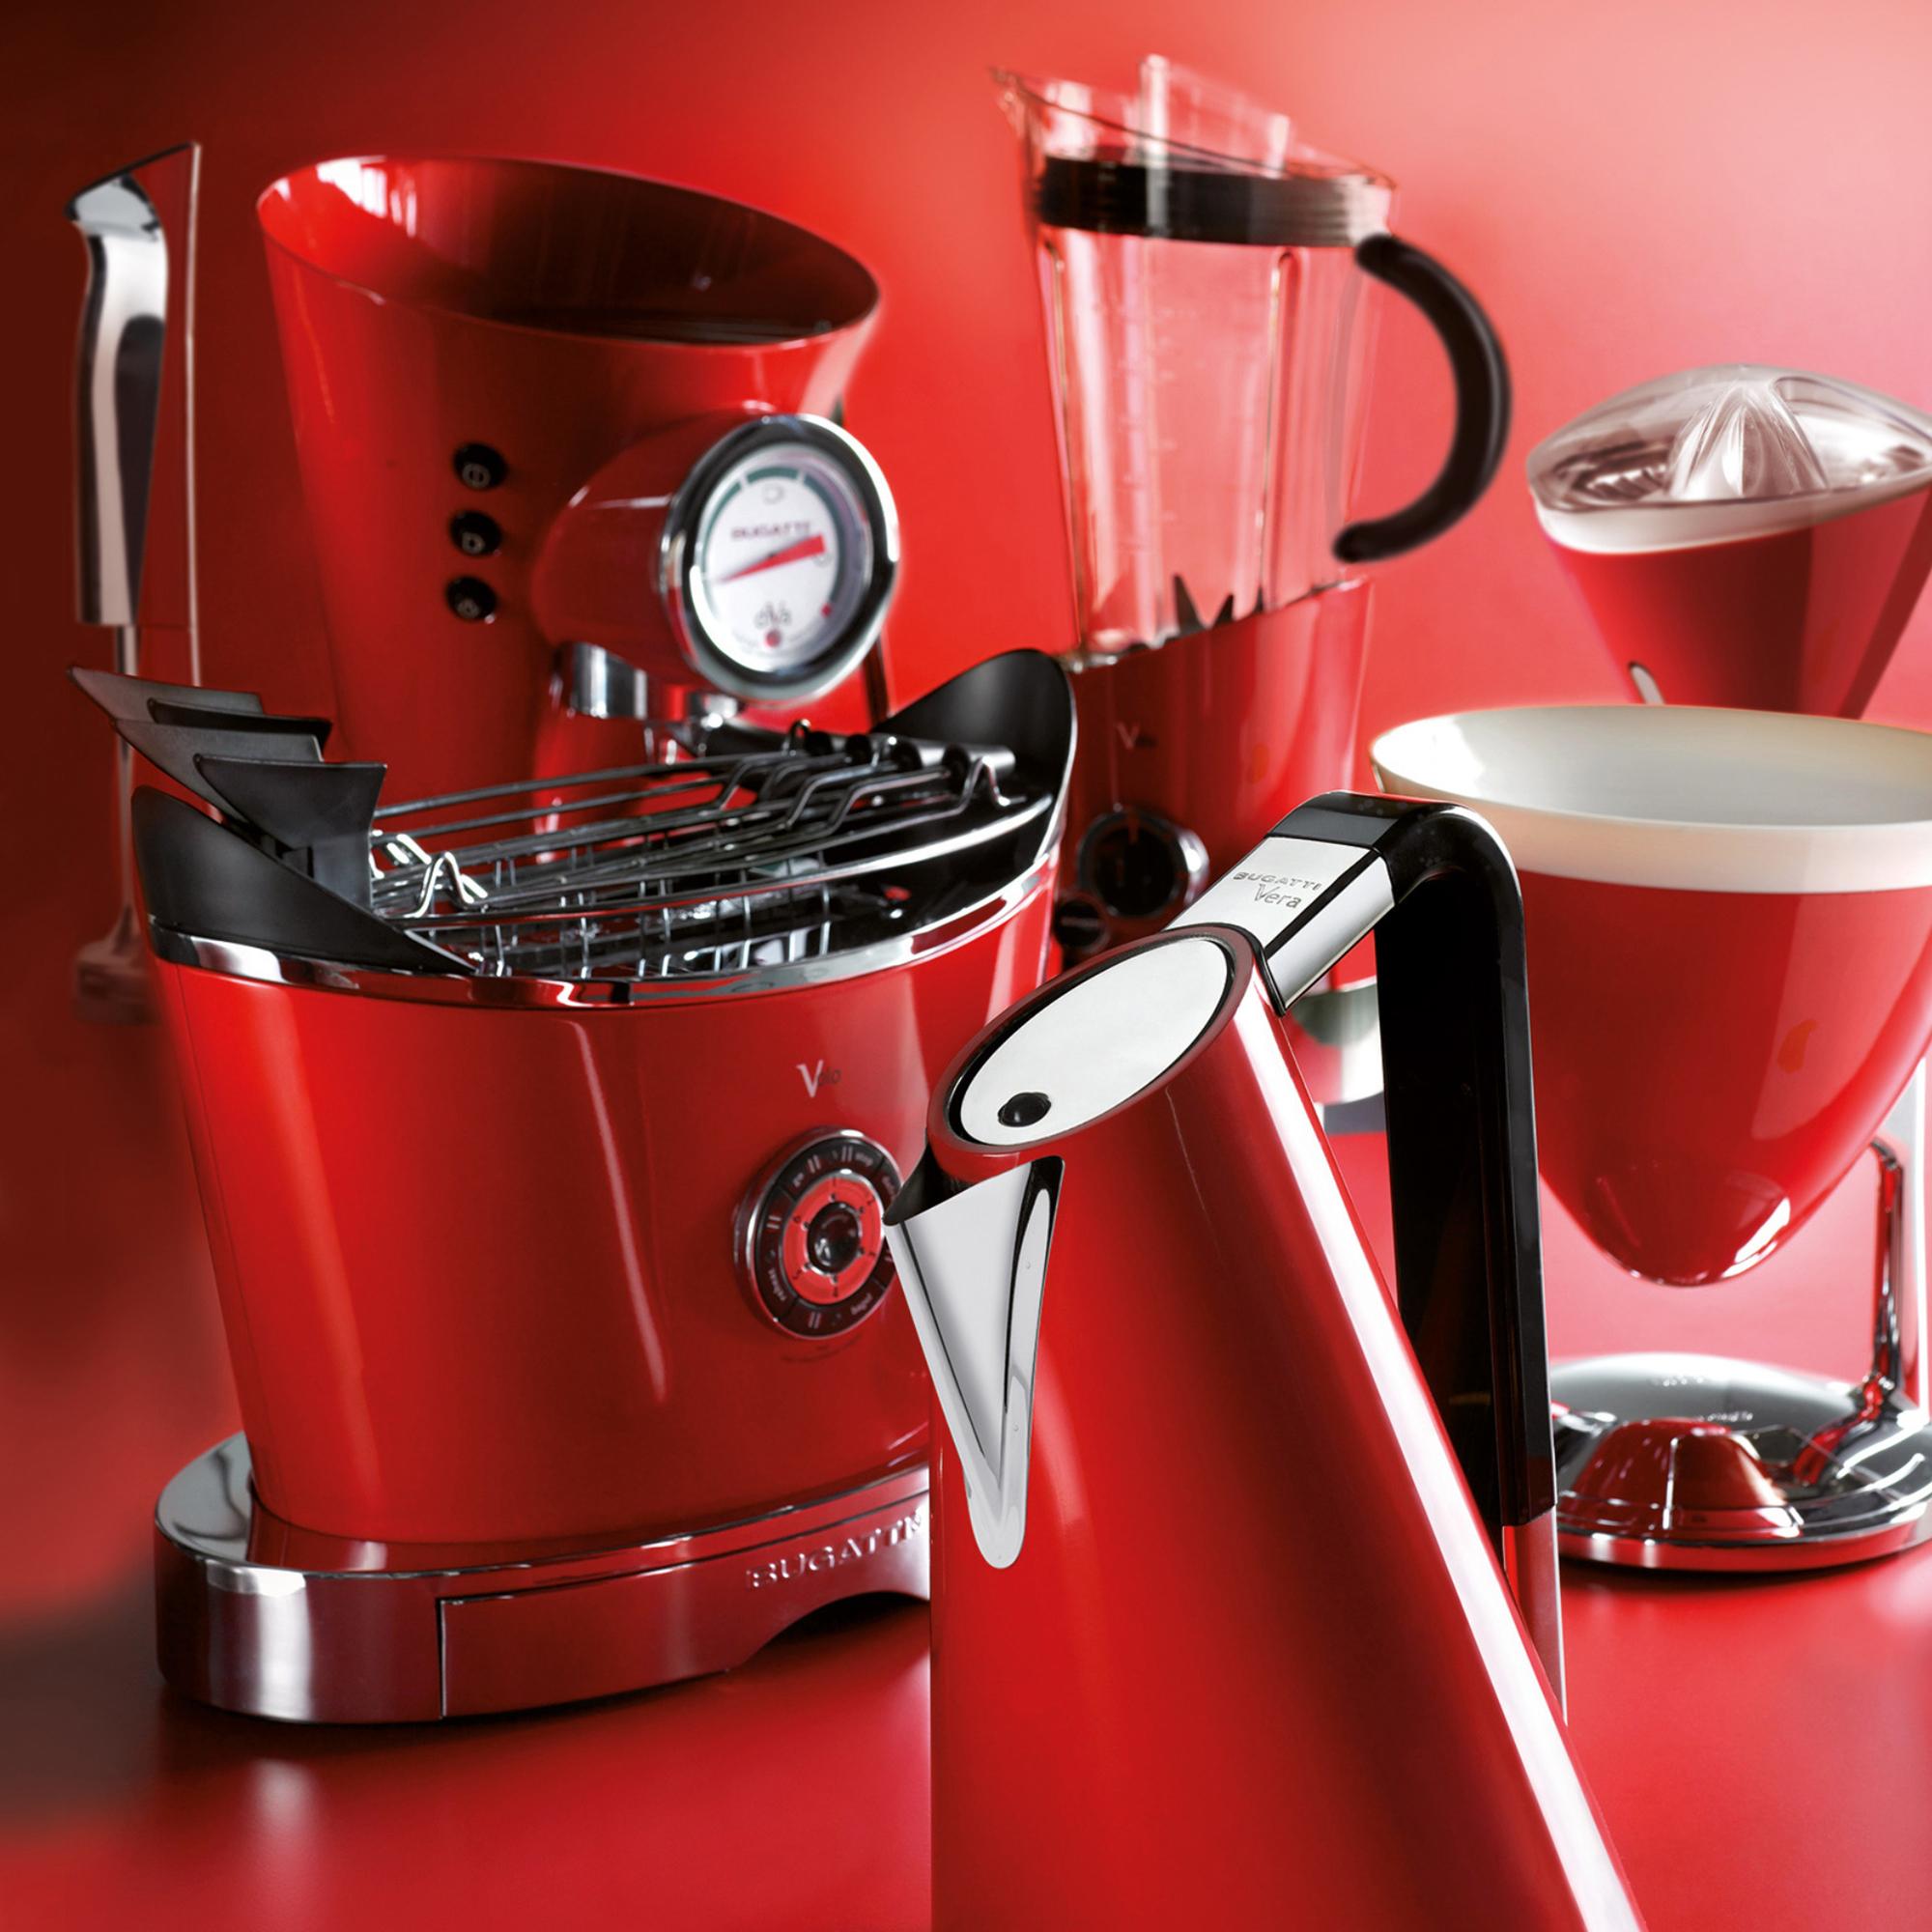 Bugatti Diva Evolution Espresso Coffee Machine Red Image 2